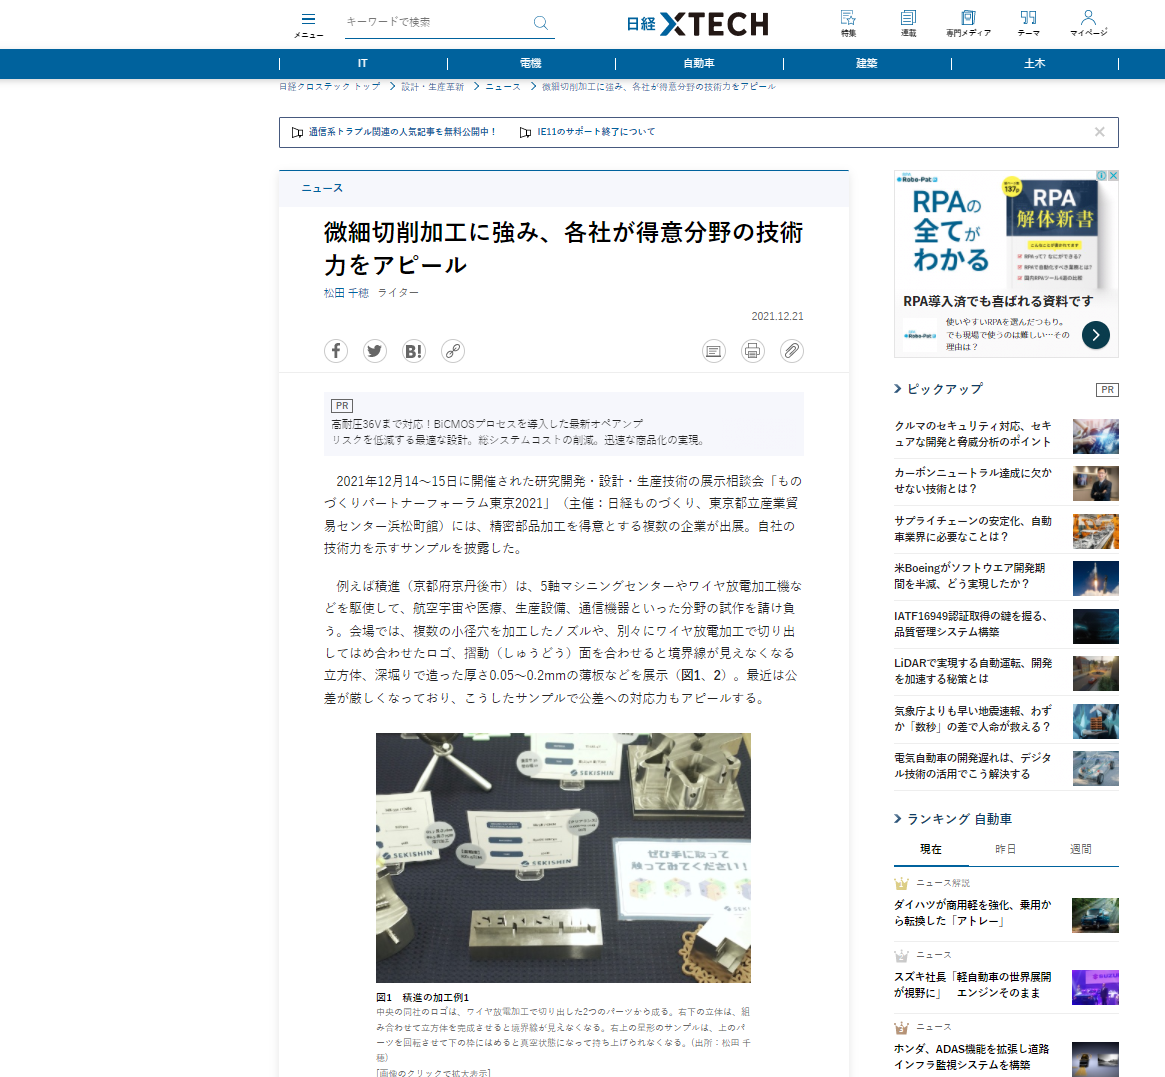 【NEWS】日経BPの「日経XTECH」に当社が紹介されました！